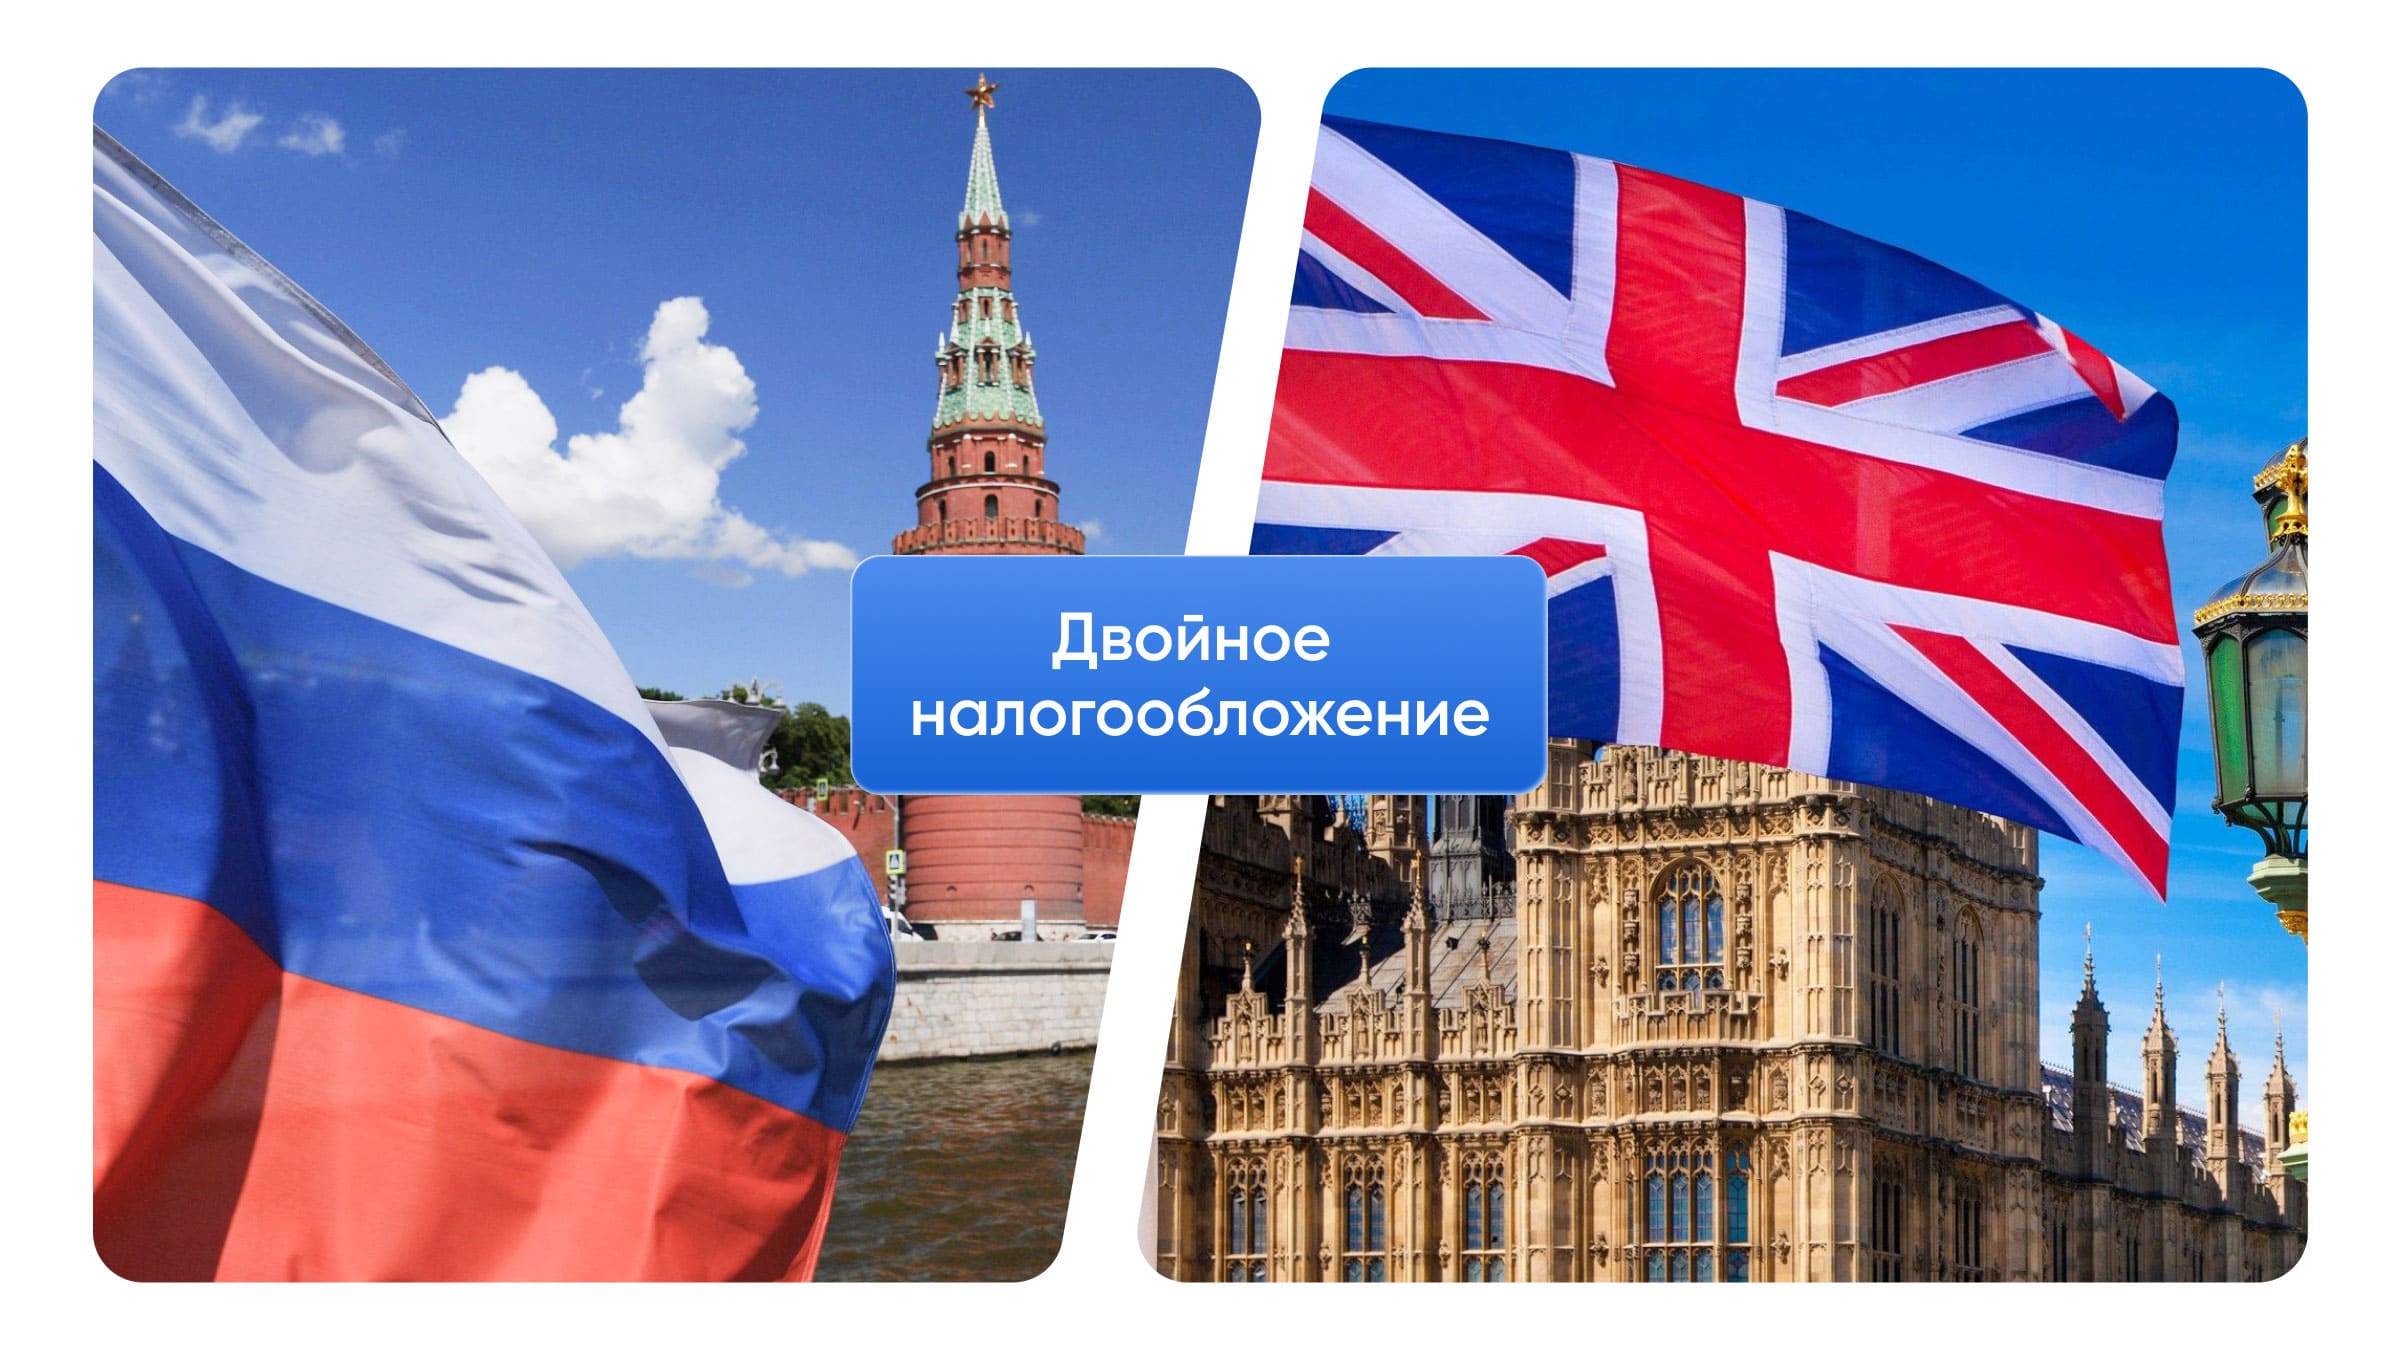 Великобритания имеет соглашения об избежании налогообложения со многими странами Восточной Европы и СНГ, включая РФ.